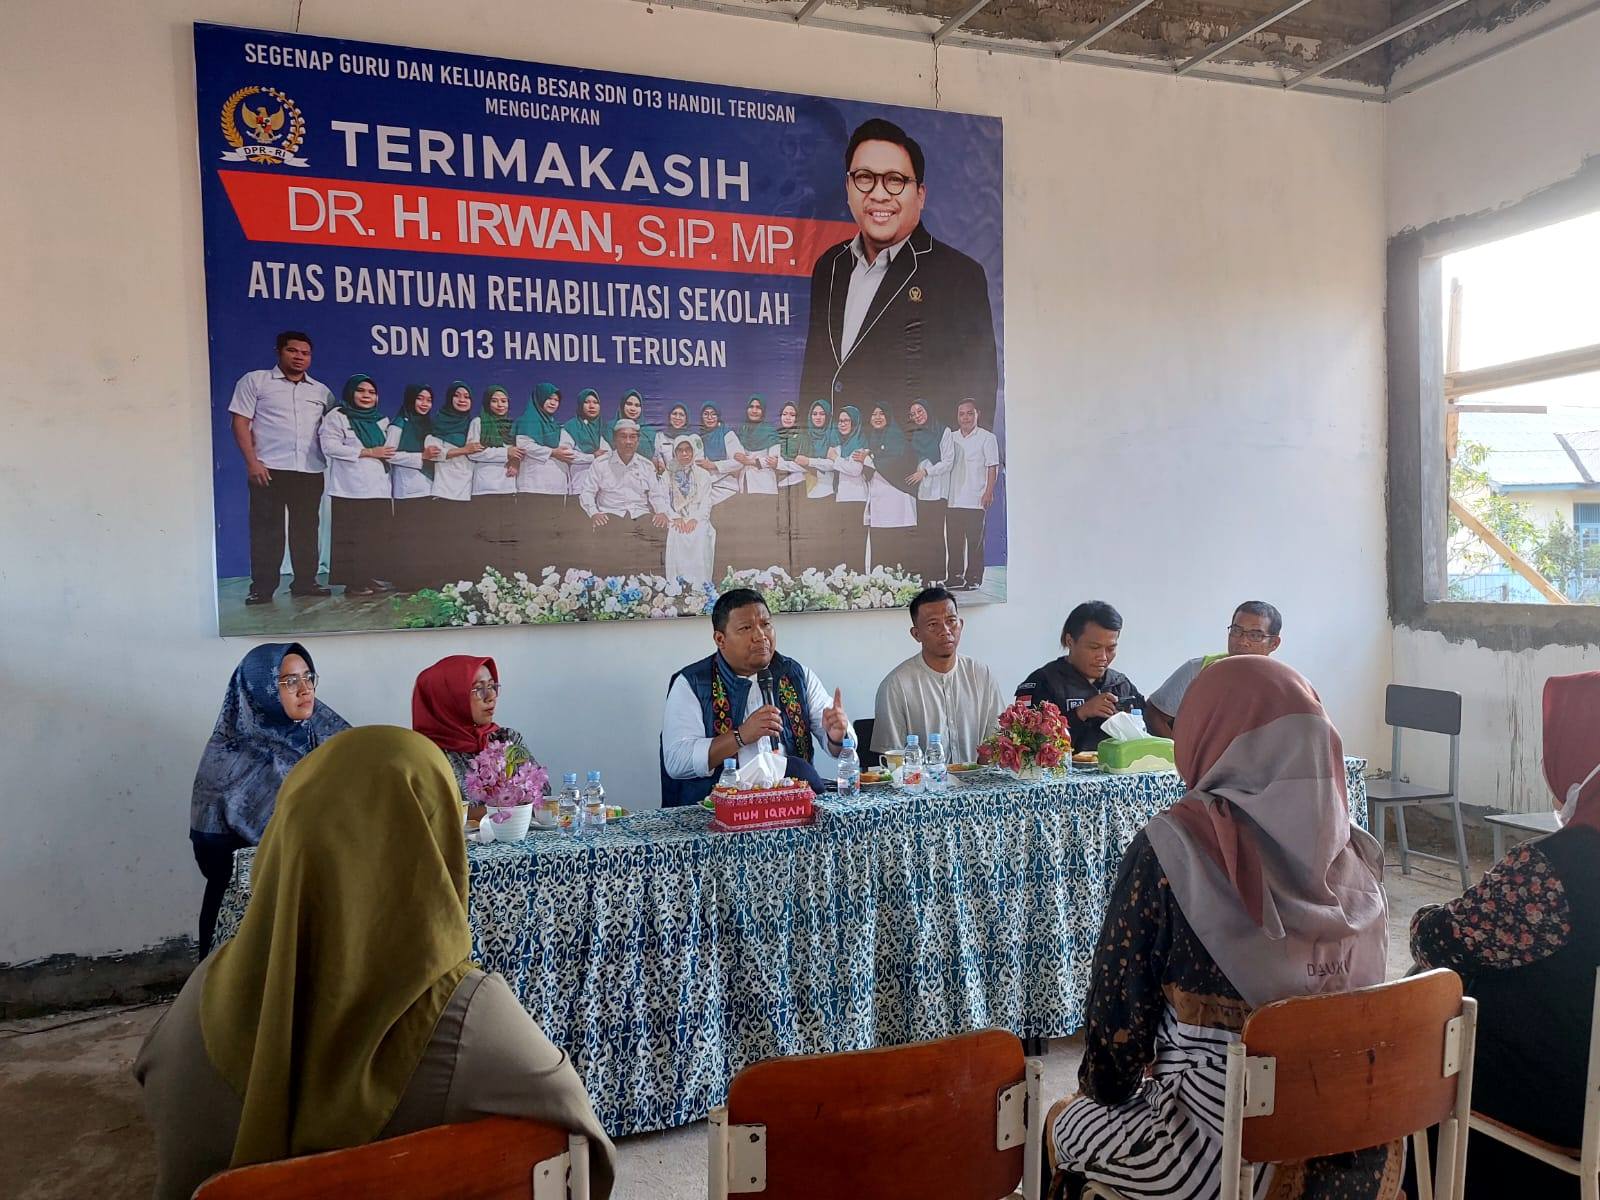 Anggota DPR RI Irwan Tinjau Rehabilitasi SDN 013 Anggana, Kondisi Awalnya Memprihatinkan